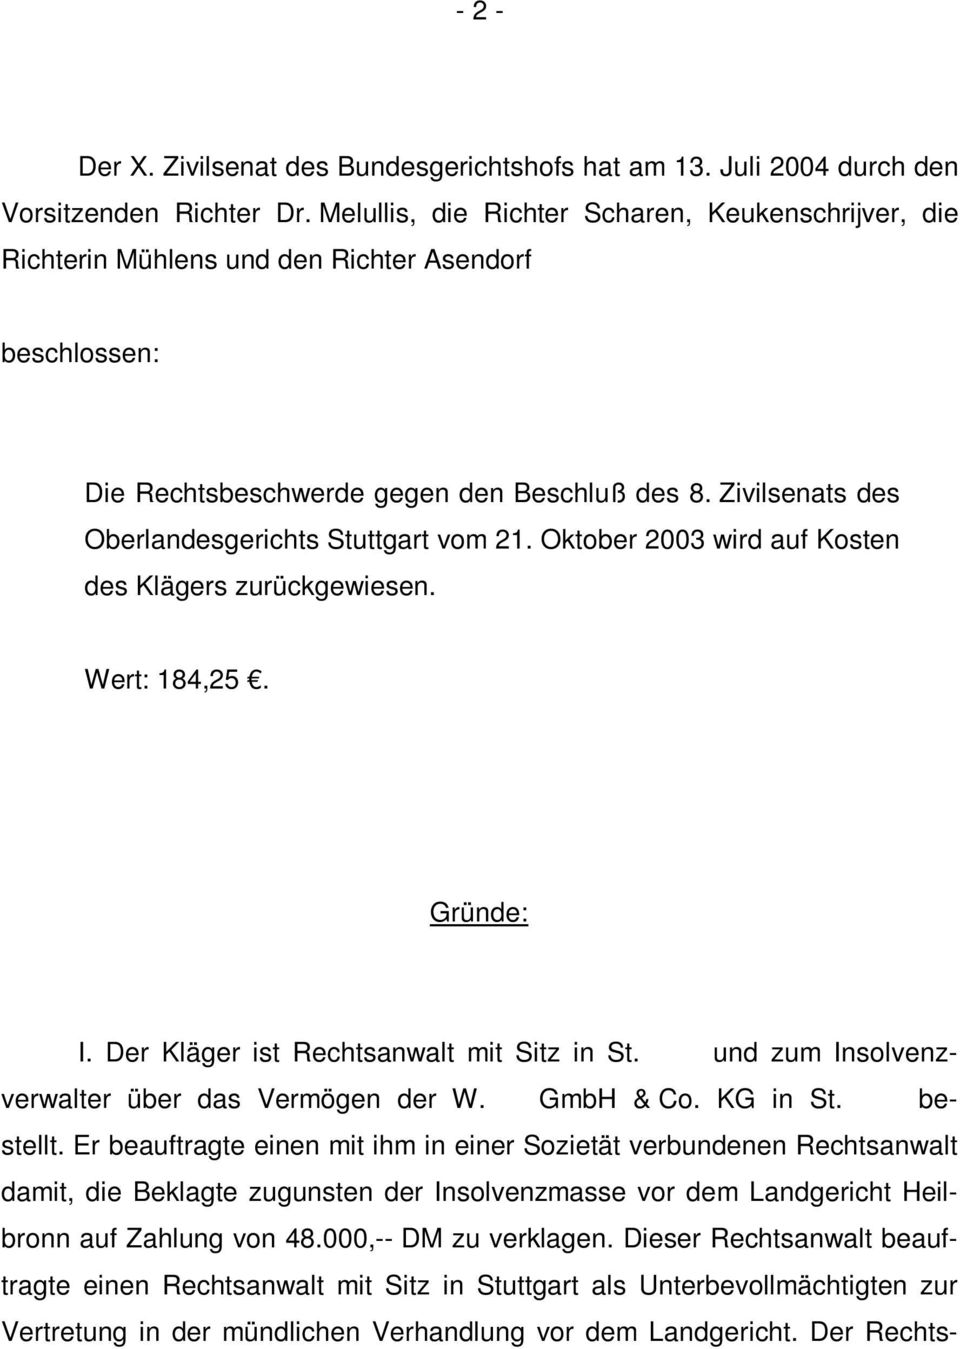 Zivilsenats des Oberlandesgerichts Stuttgart vom 21. Oktober 2003 wird auf Kosten des Klägers zurückgewiesen. Wert: 184,25. Gründe: I. Der Kläger ist Rechtsanwalt mit Sitz in St.